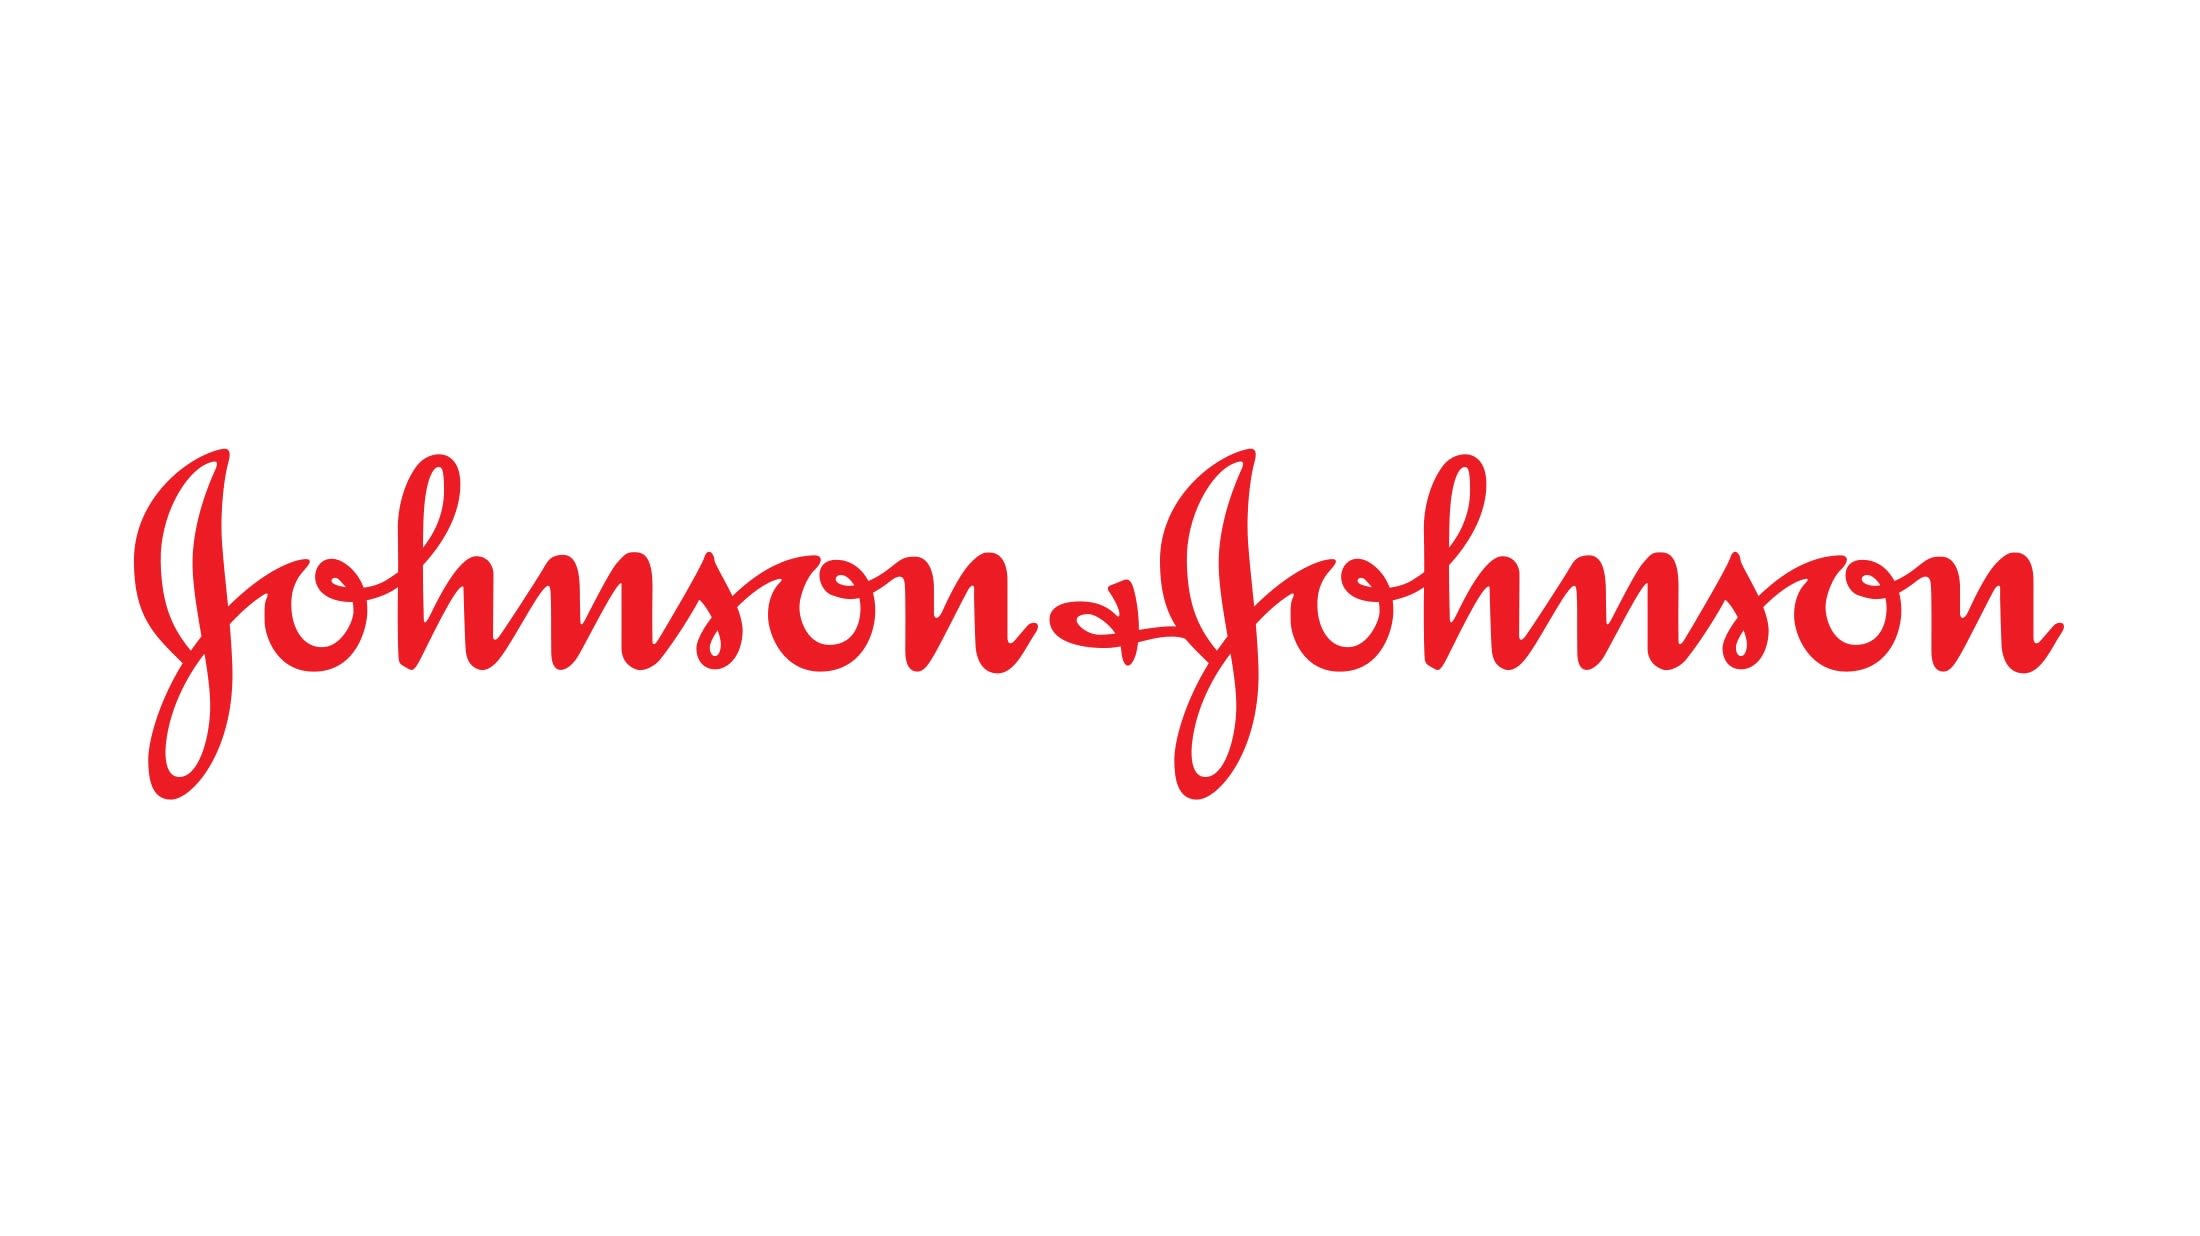 https://cdn.allaboutvision.com/images/JJ-logo.jpg